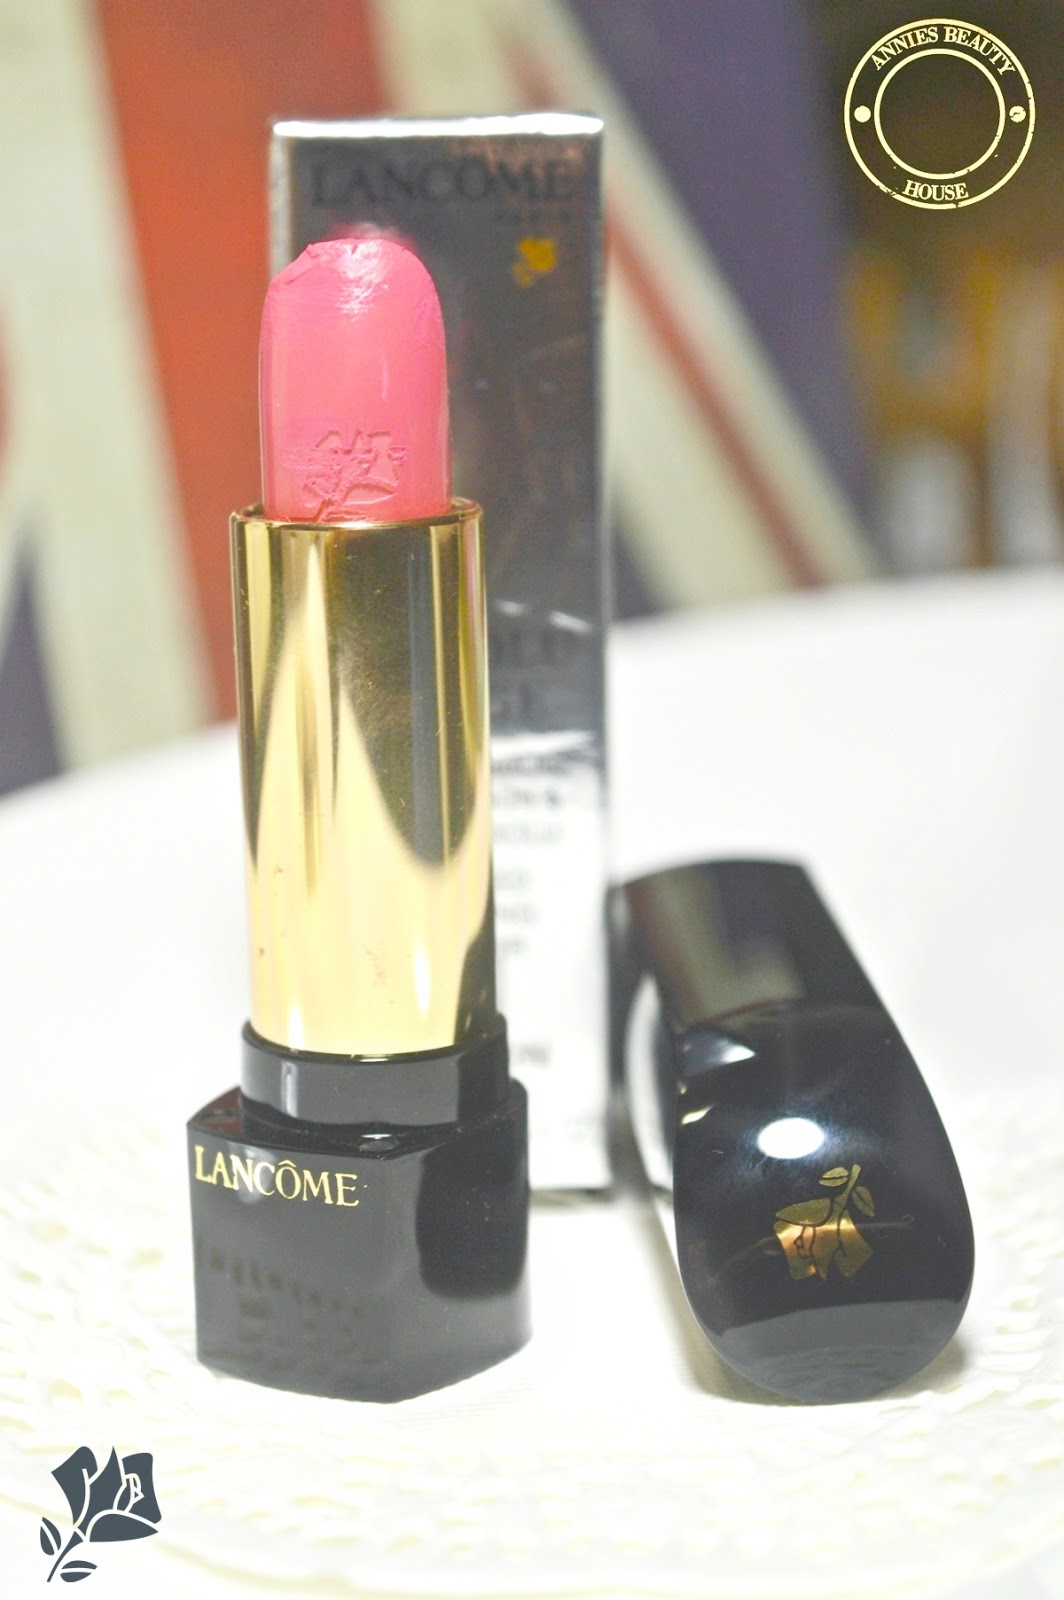 LANCÔME L'Absolu Rouge Rose Bourbon 257 -  Detail picture open lipstick